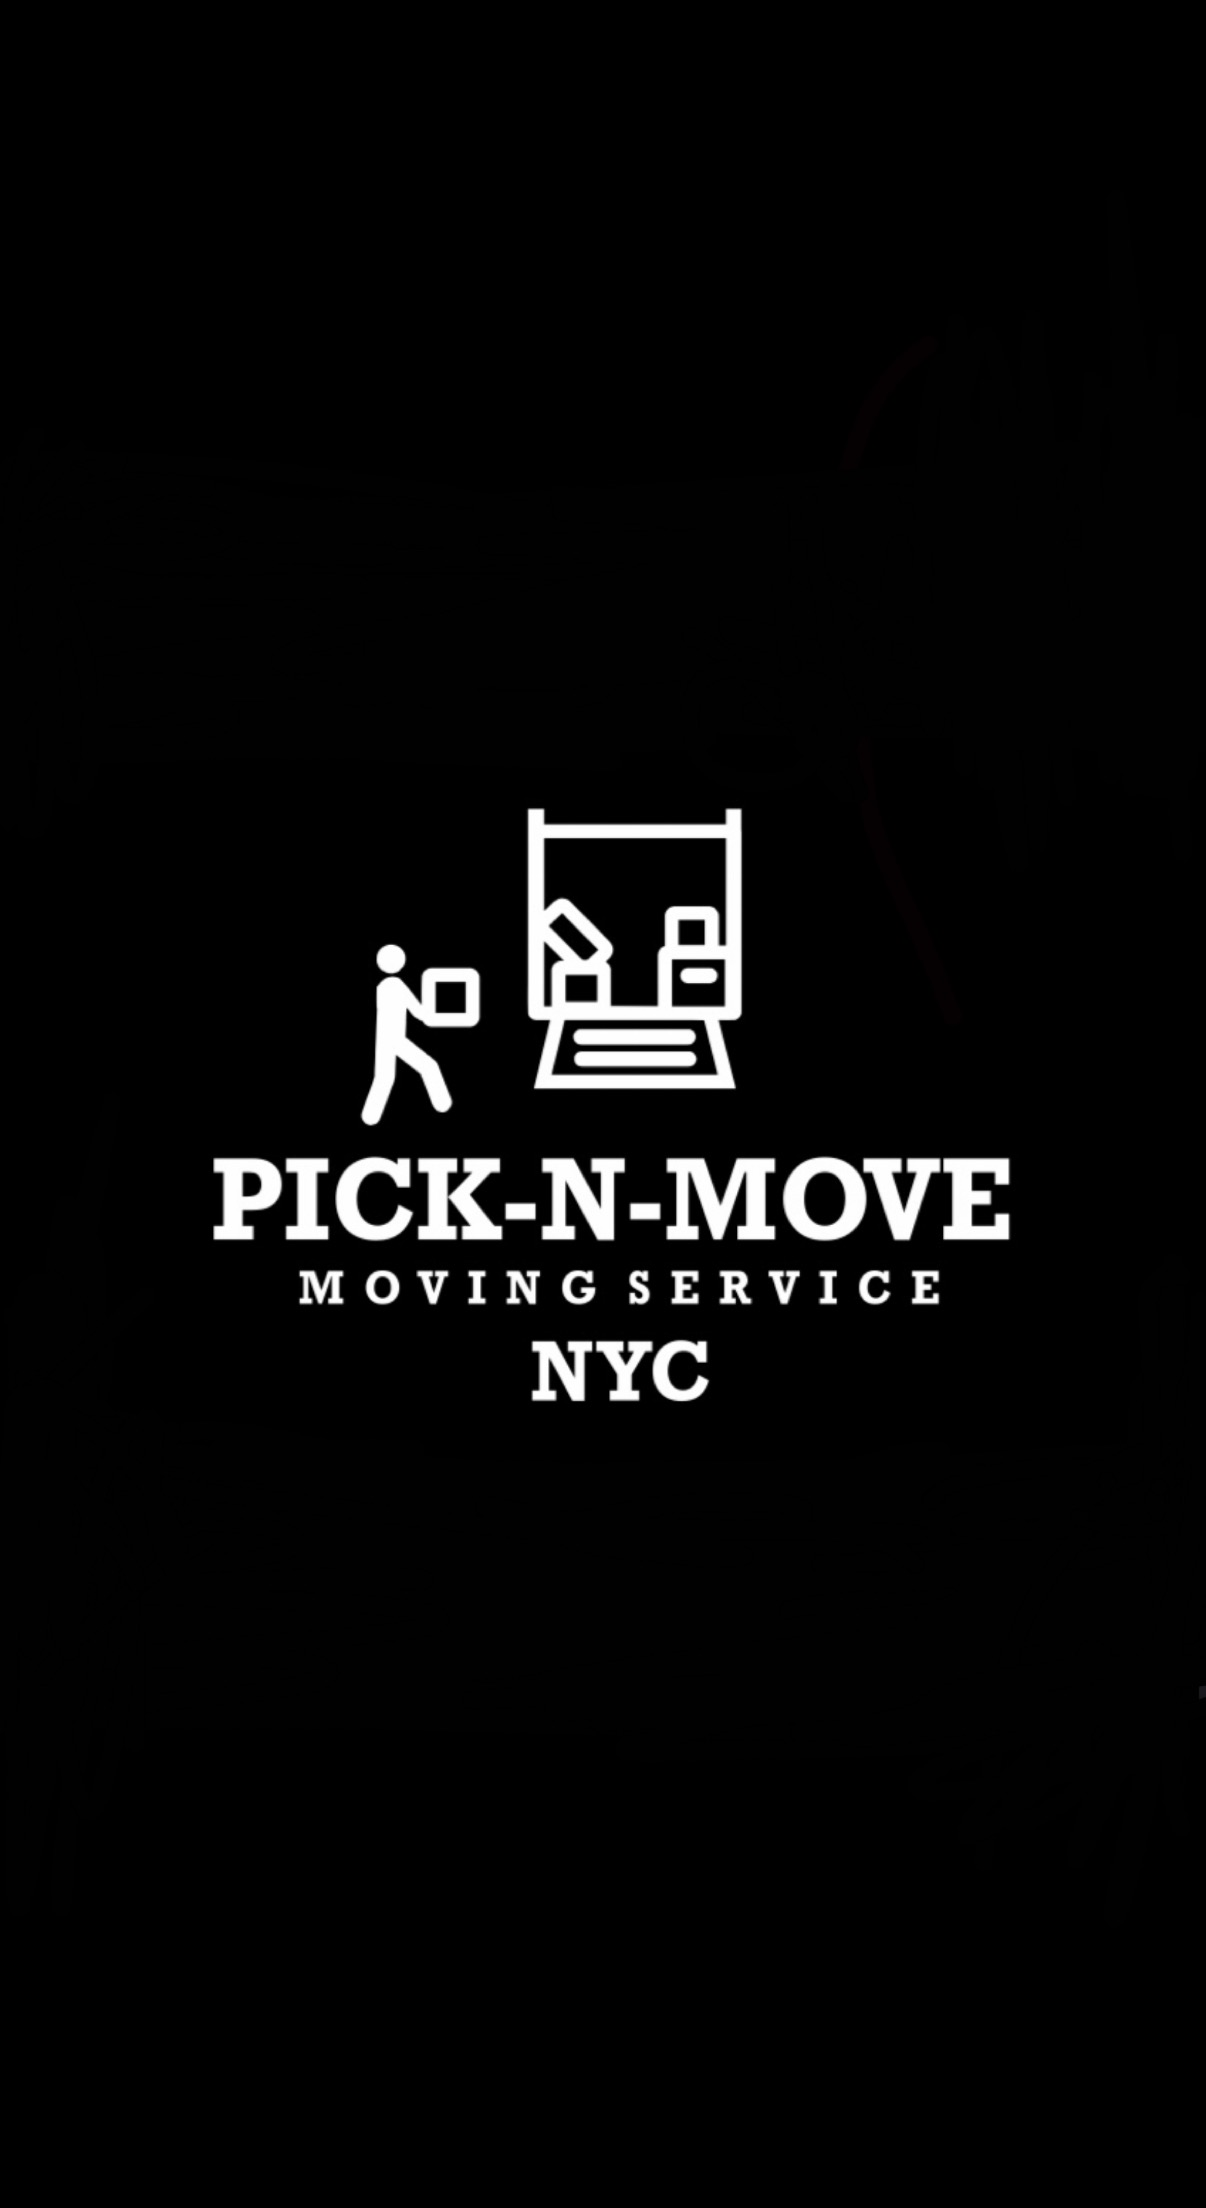 Pick-n-move NYC